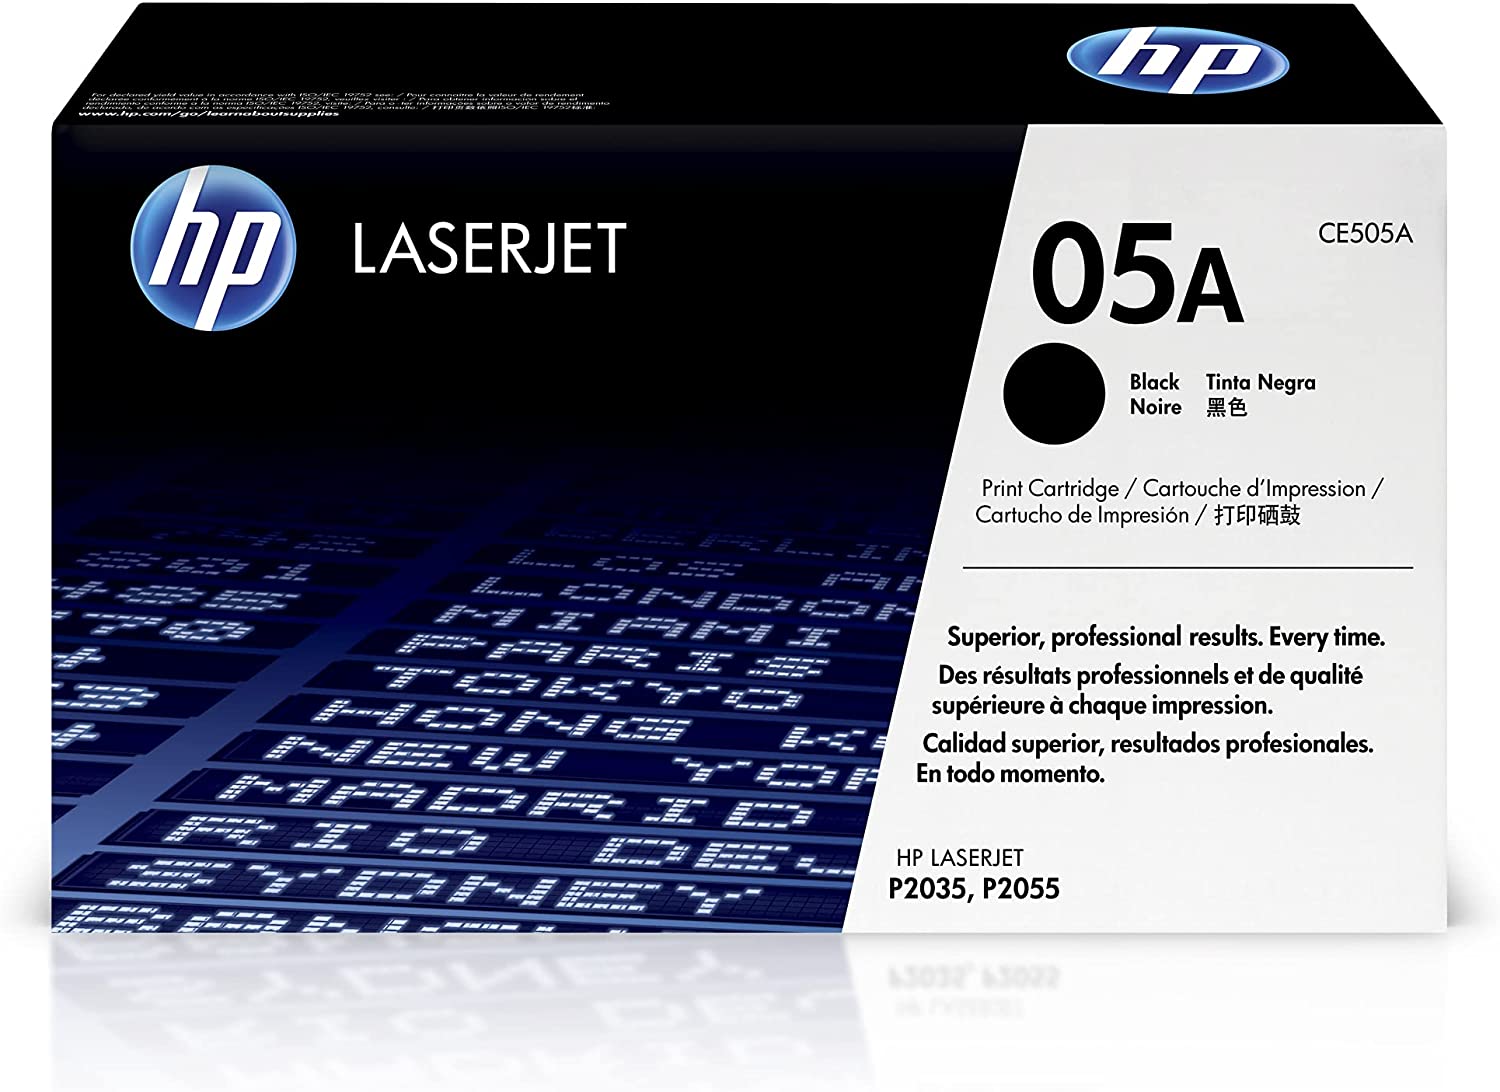 HP LaserJet Ink Cartridge, Black - CE505A